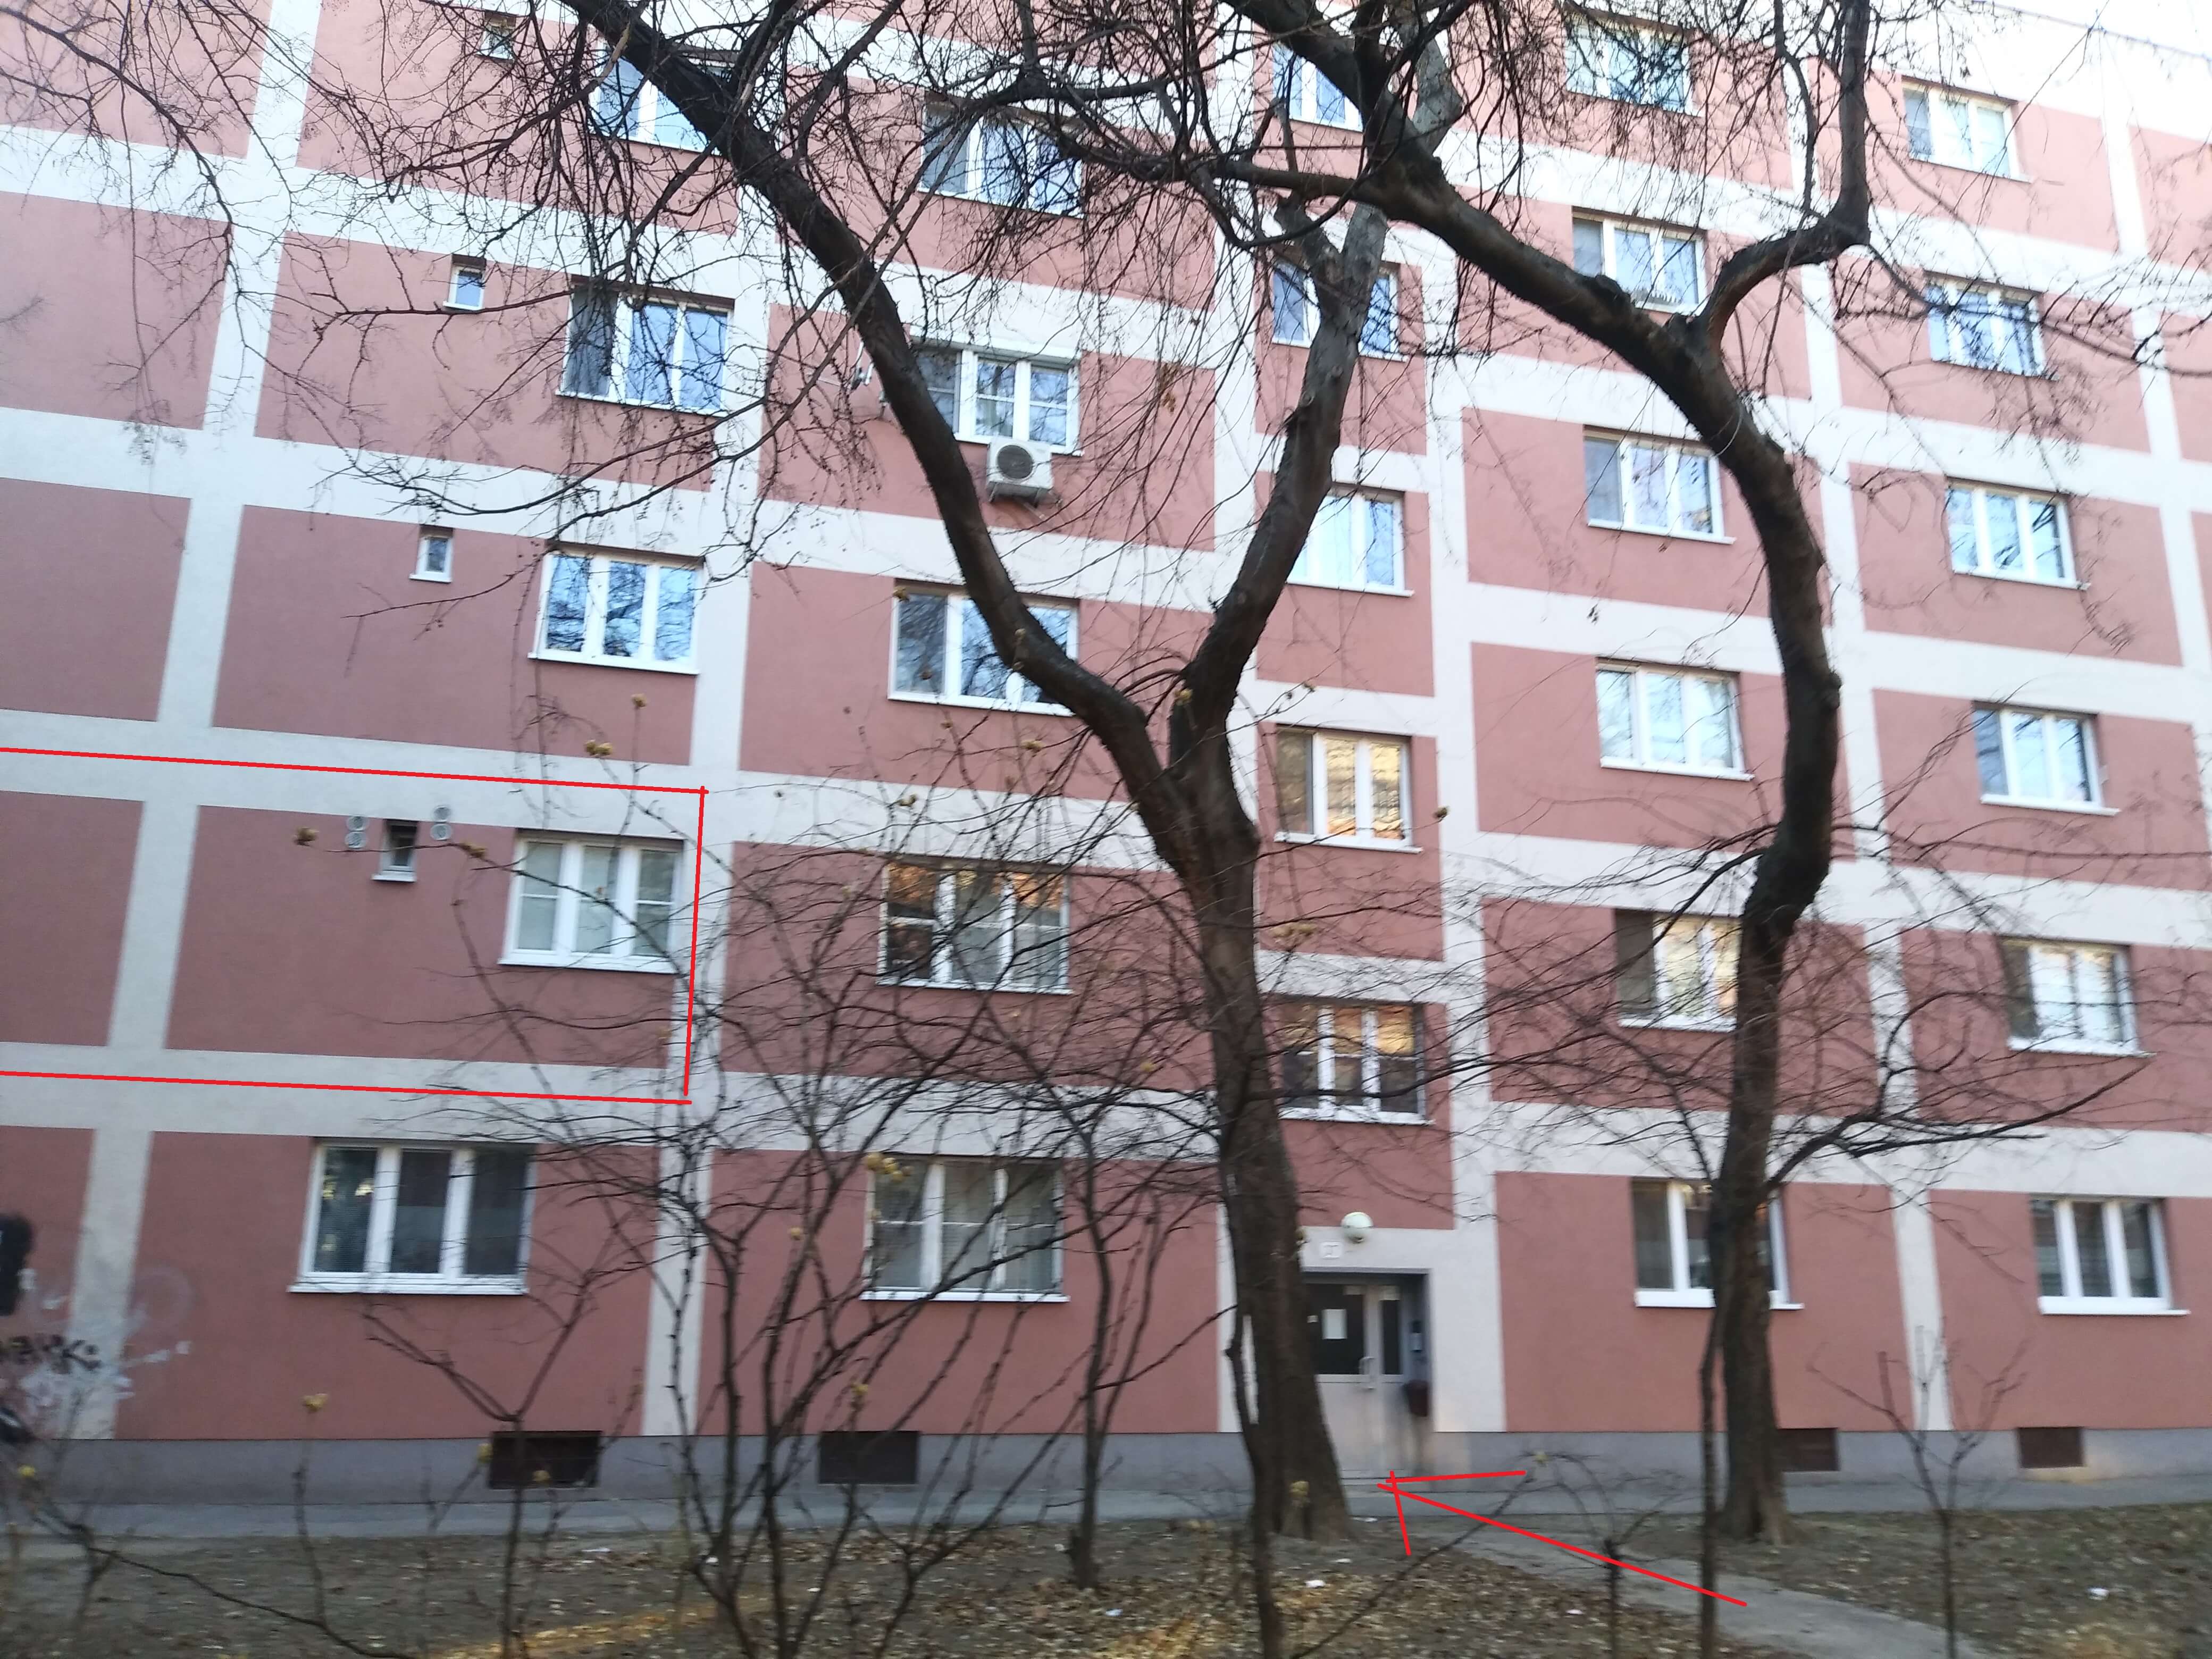 Prenajaté: Prenájom jednej izby v 2 izb. byte, staré mesto, Šancová ulica, Bratislava, 80m2, zariadený-3